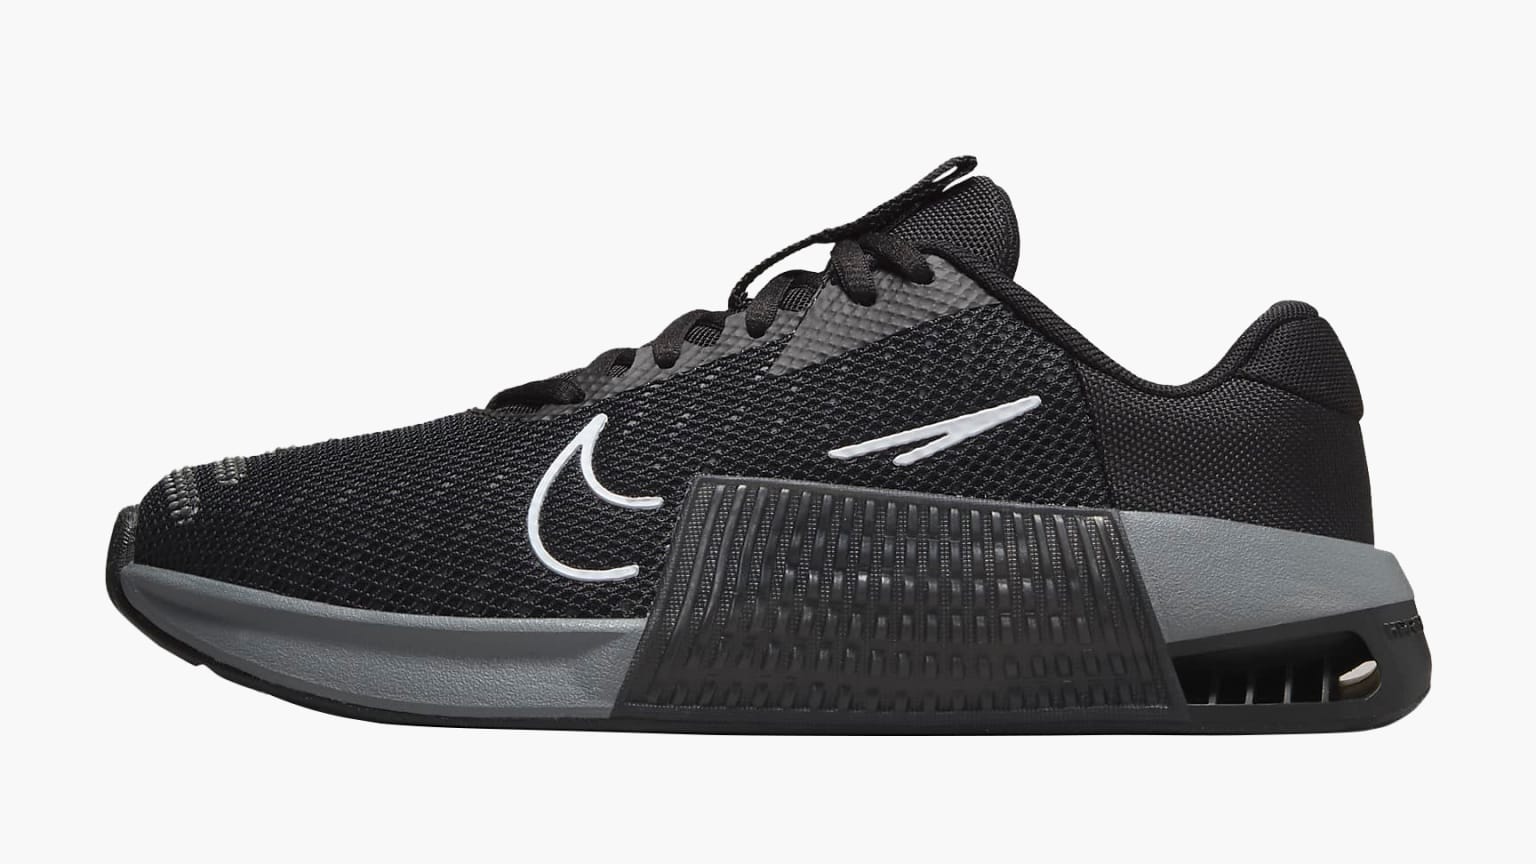 Nike Metcon 9 negro zapatillas cross training hombre